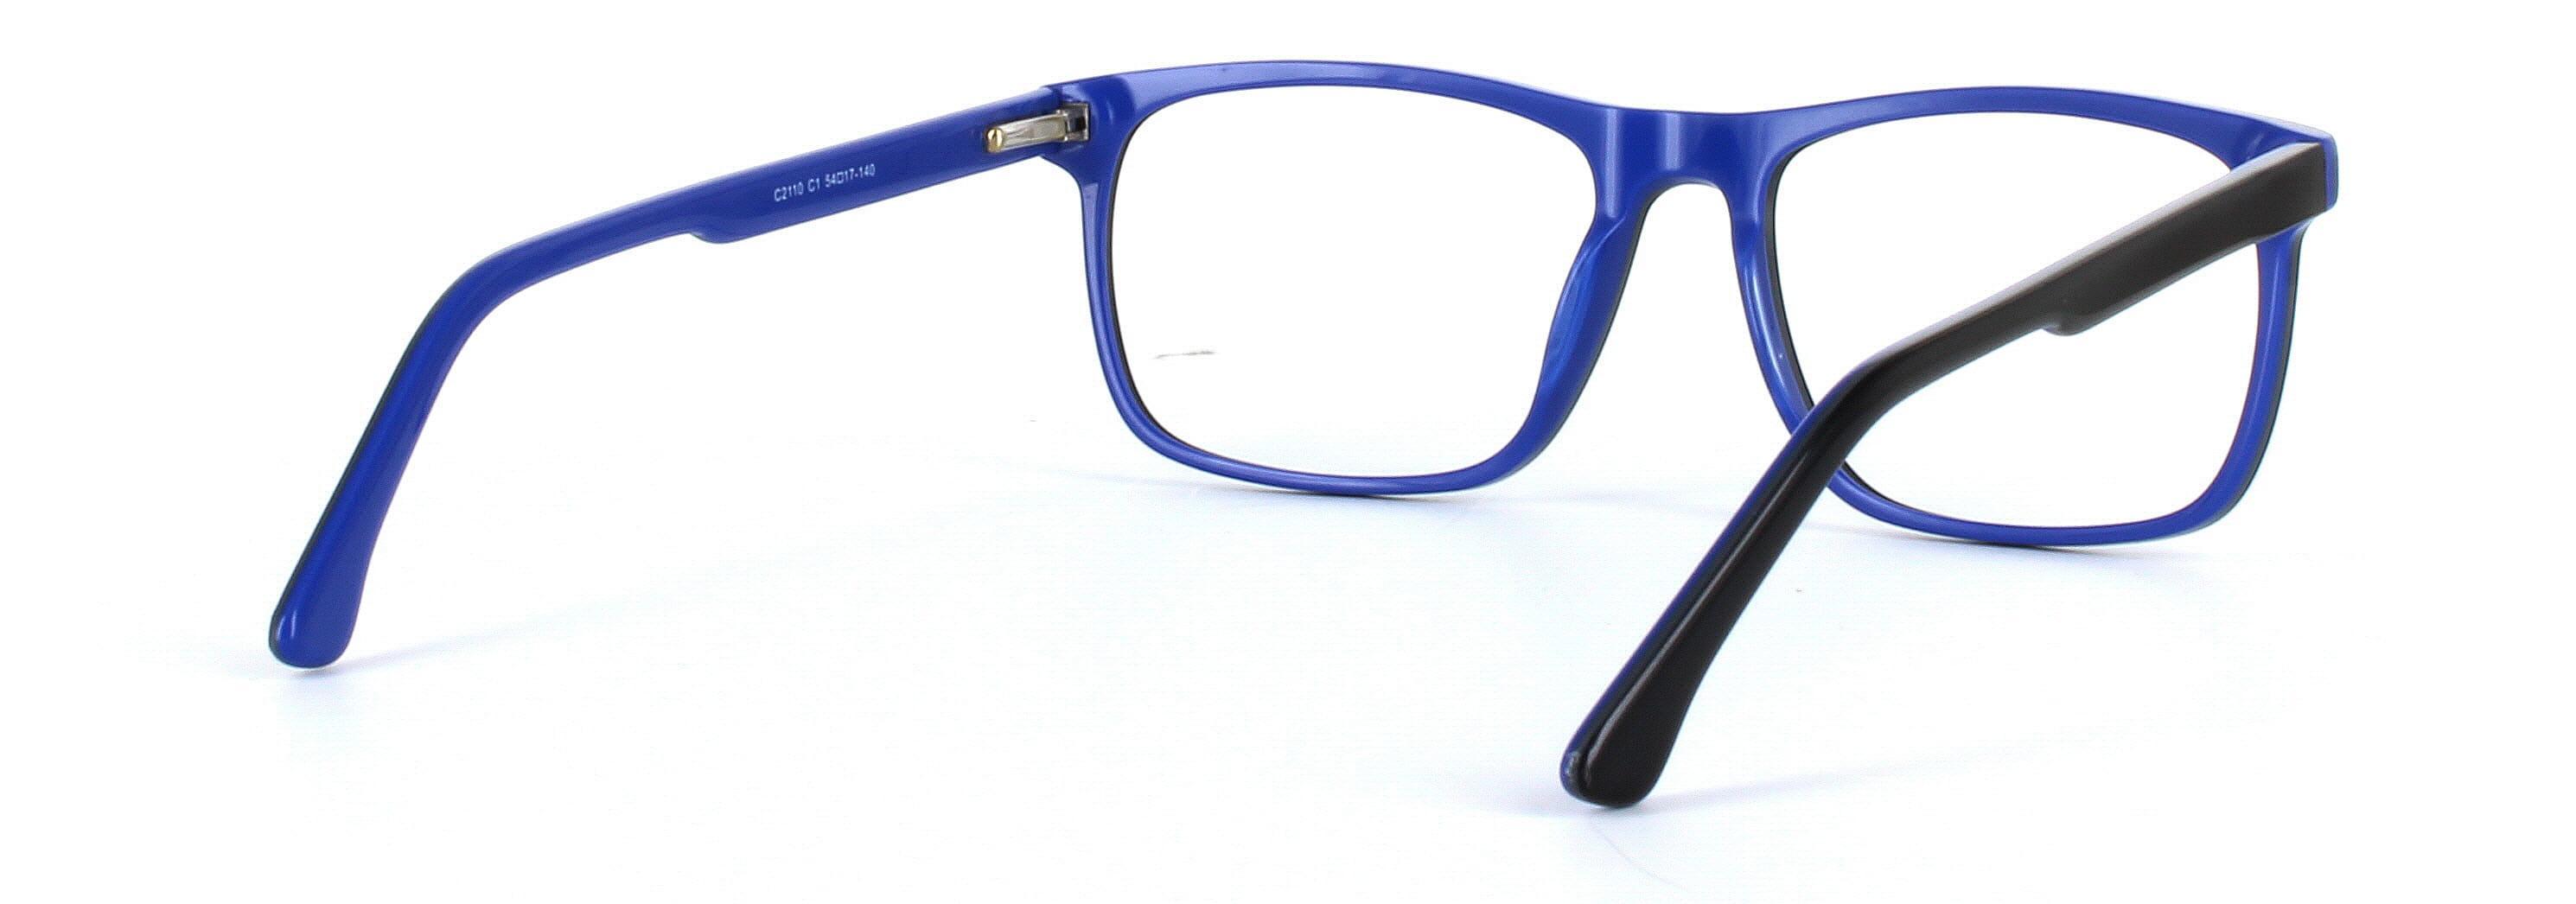 Ashington Black Full Rim Square Plastic Glasses - Image View 4